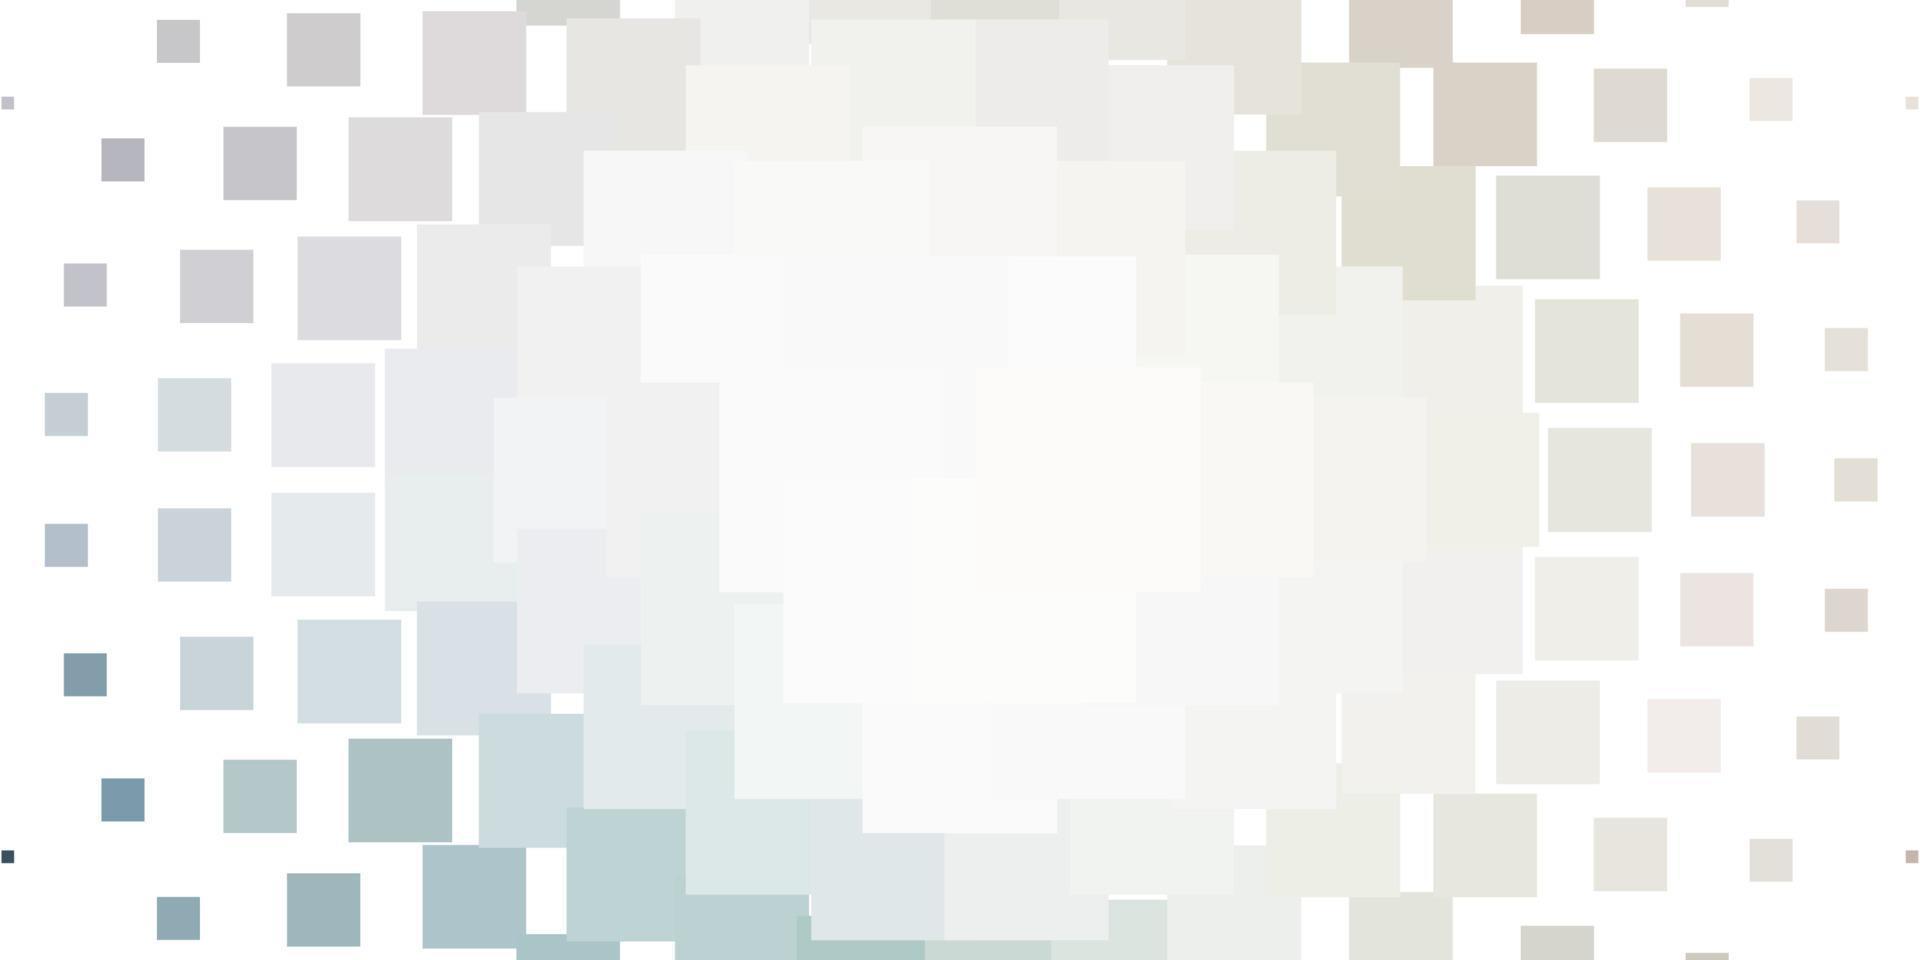 sfondo vettoriale grigio chiaro in stile poligonale.